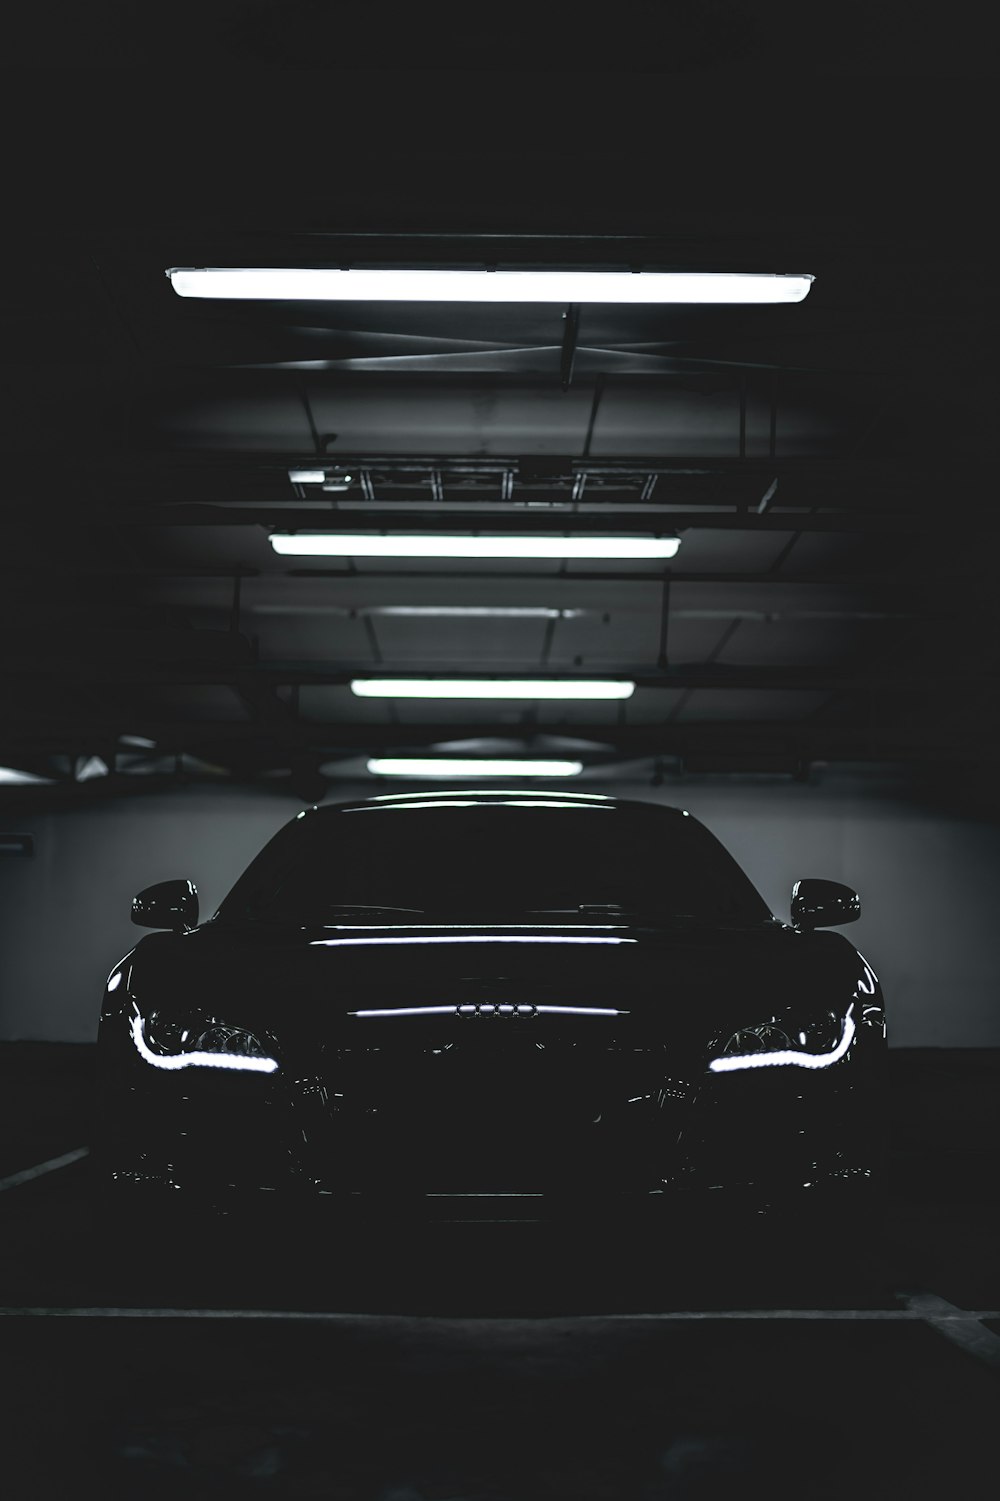 Details 200 car in black background